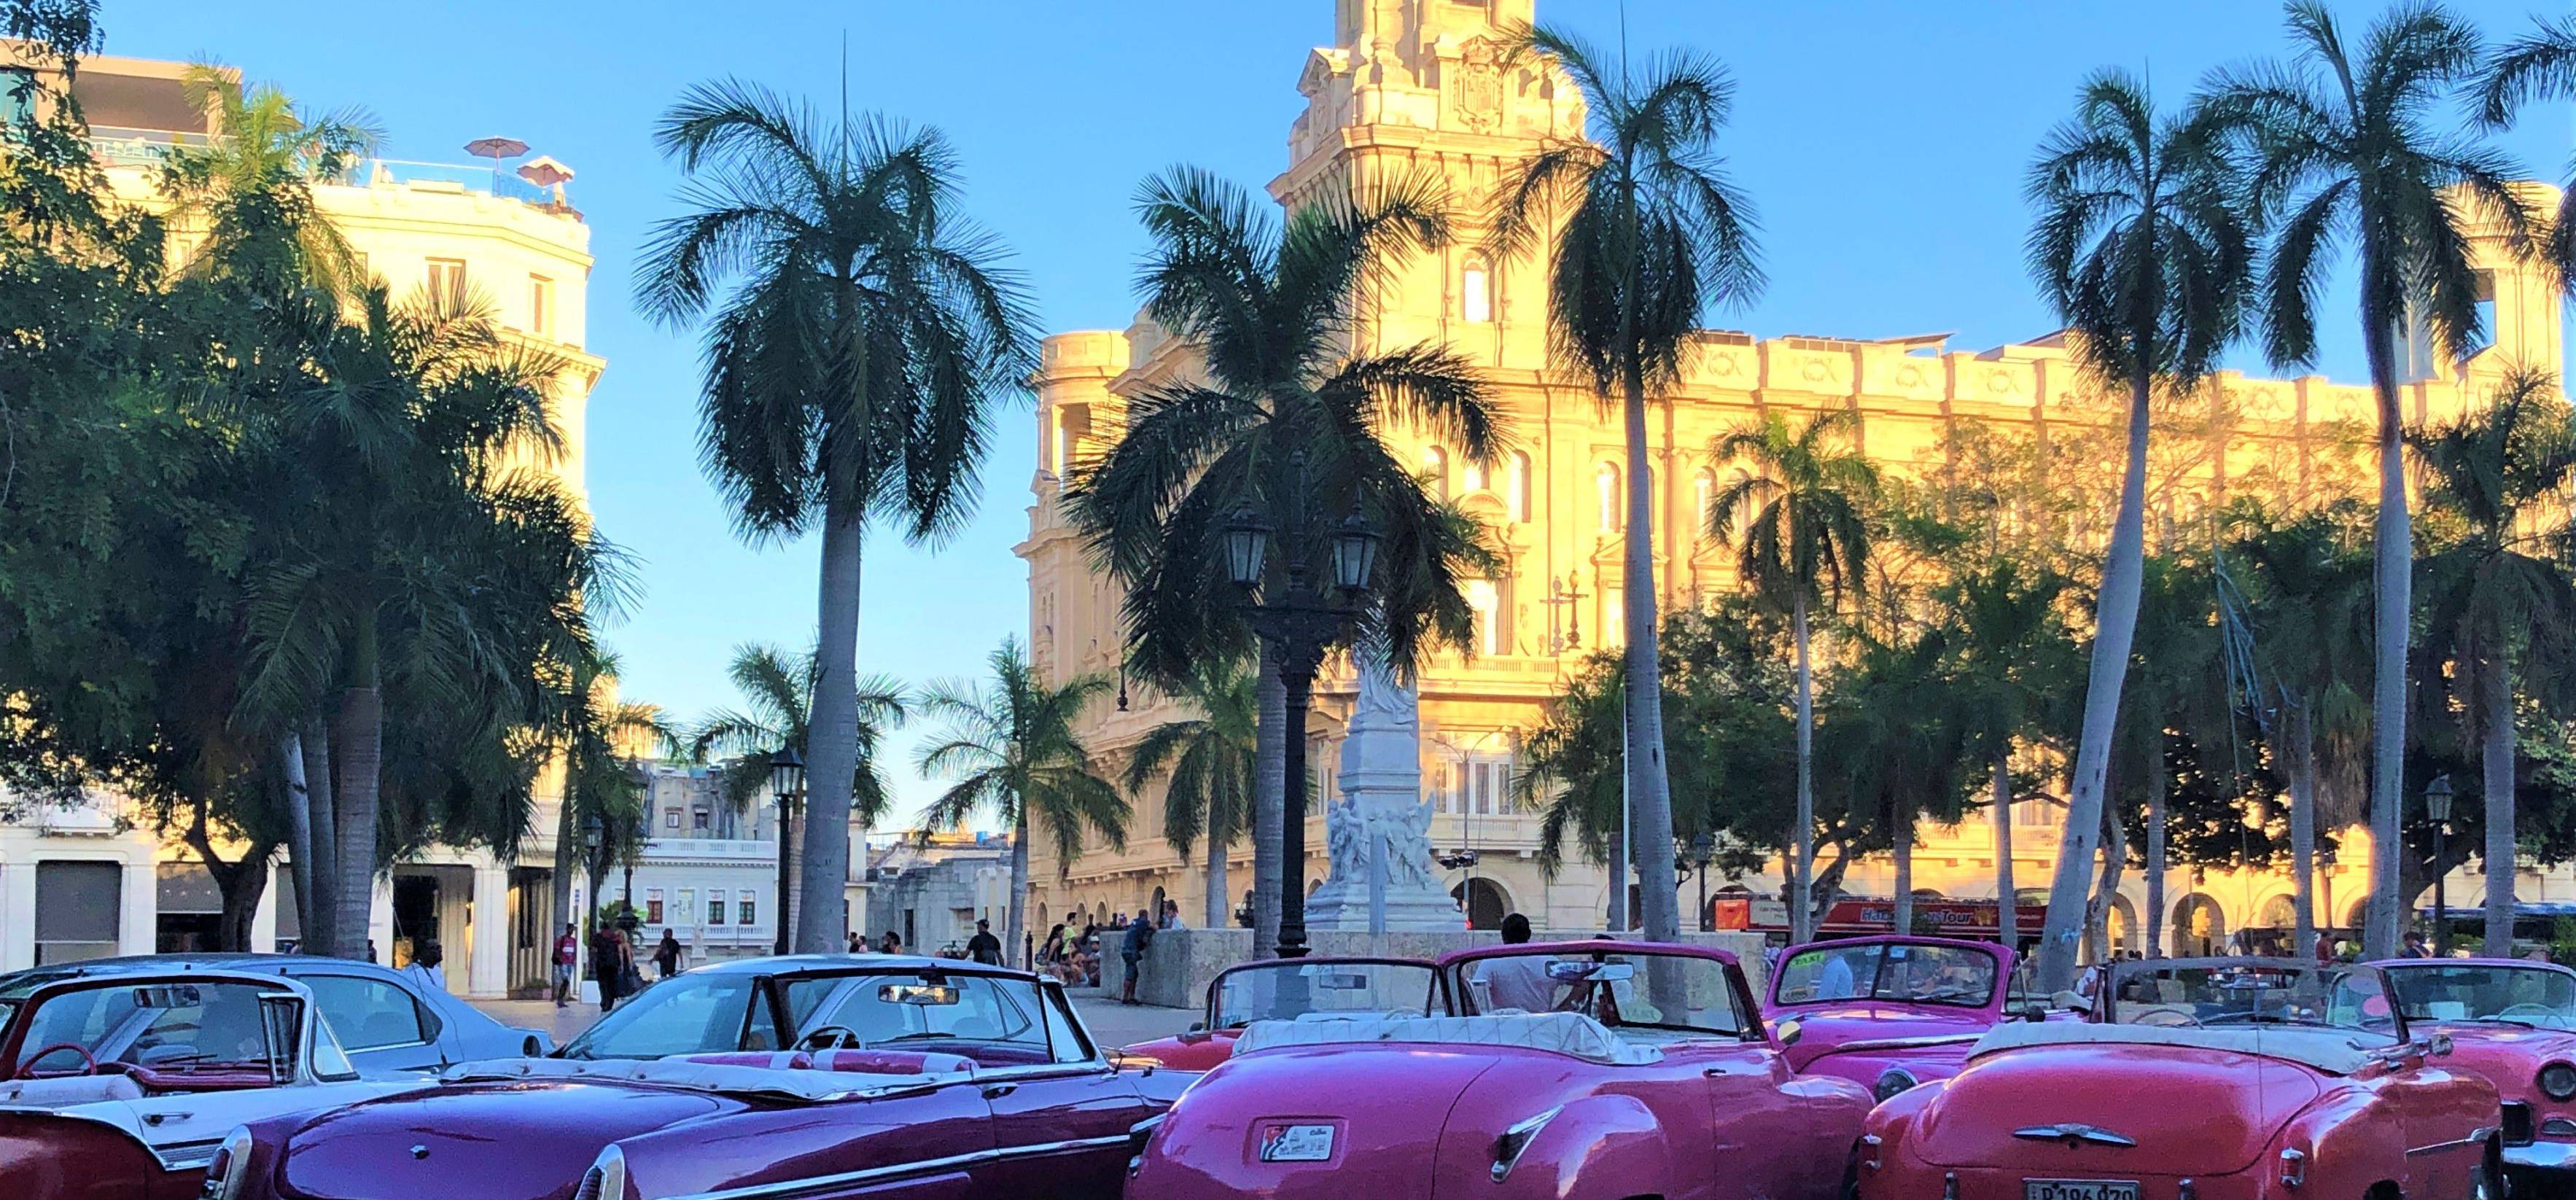 
Bienvenue à La Havane